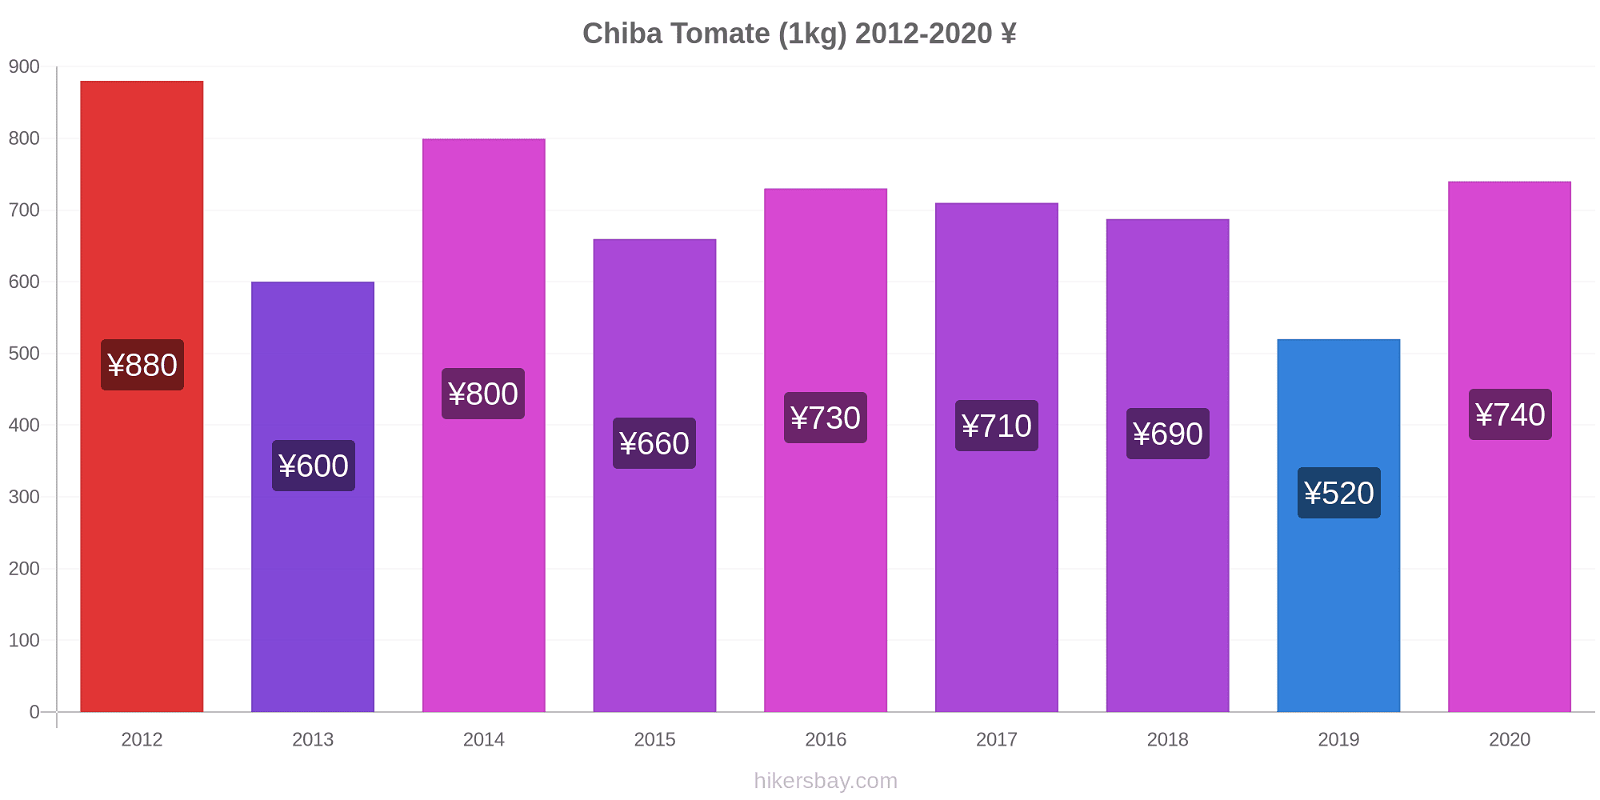 Chiba cambios de precios Tomate (1kg) hikersbay.com